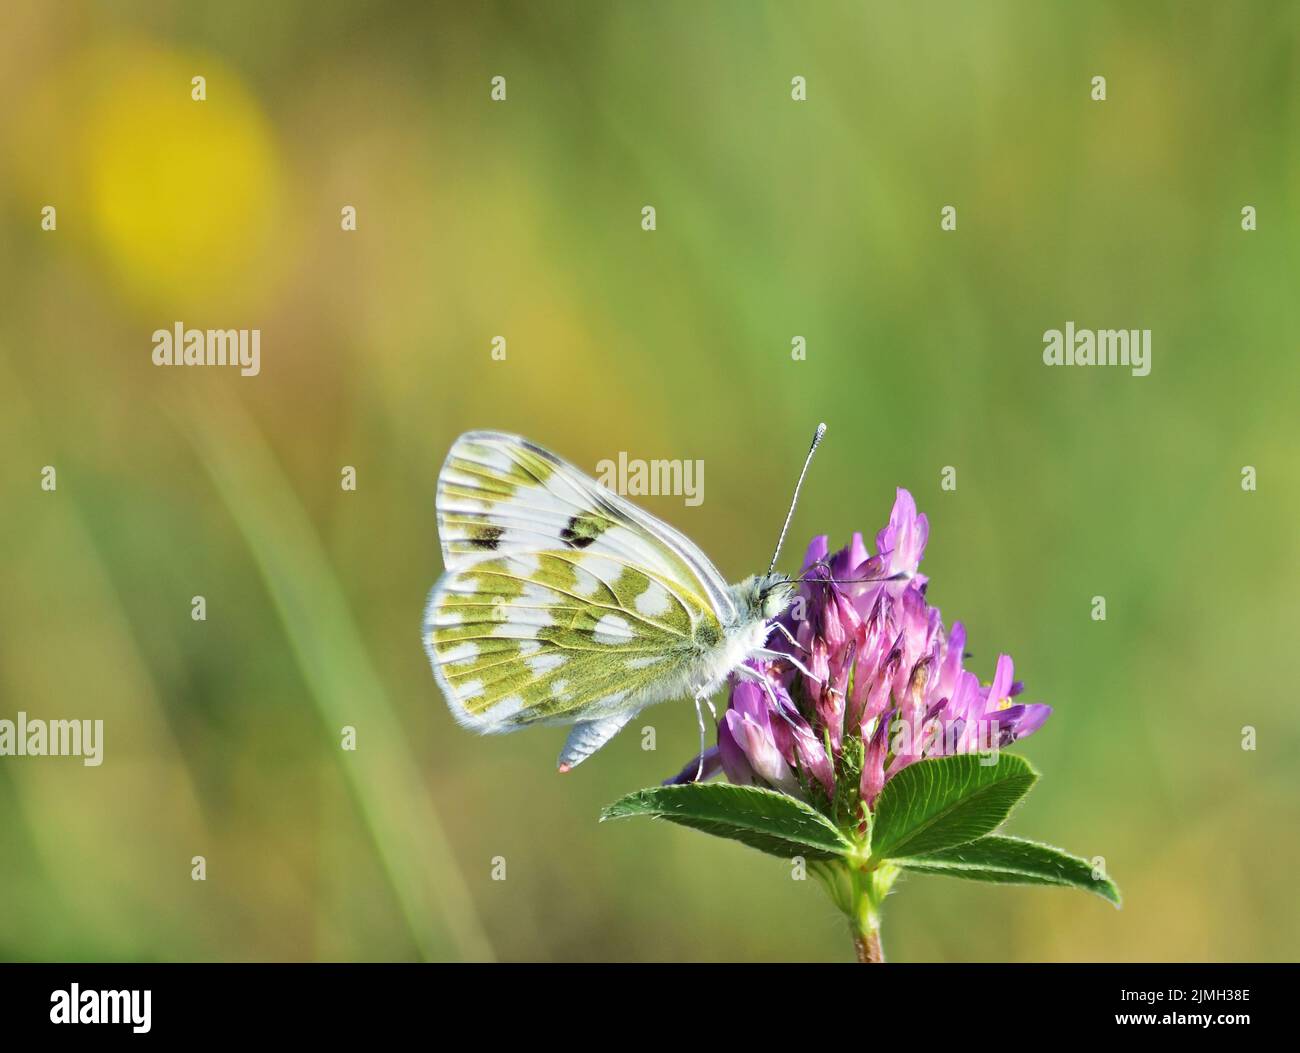 Pontia daplidice, il bianco bagno, è una piccola farfalla della famiglia Pieridae, i gialli e bianchi, che si trova nella regione paleartica. Foto Stock